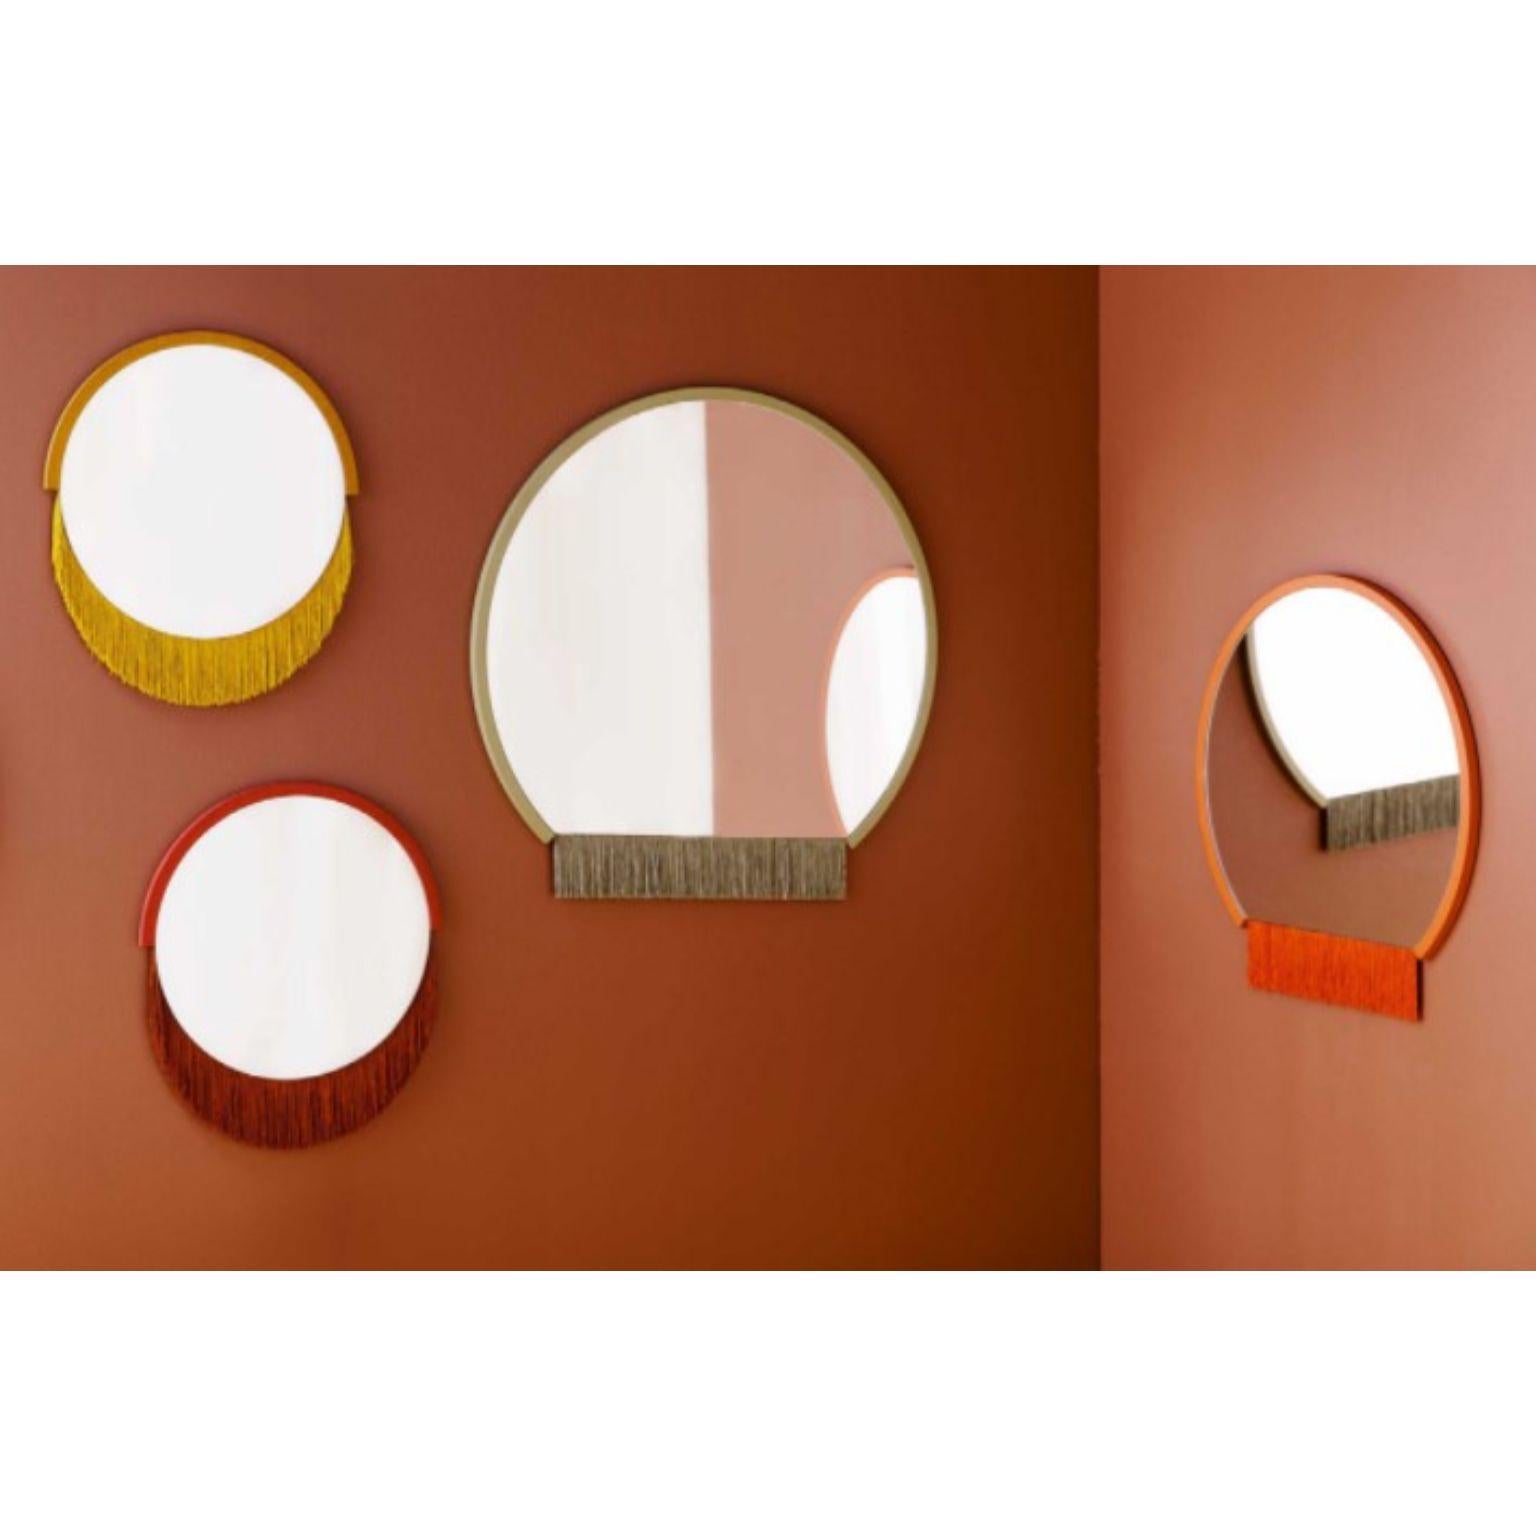 Ensemble de 4 miroirs muraux Boudoir de Tero Kuitunen.
Petits (2), moyens et grands miroirs.
MATERIAL : miroir en verre, panneau mdf, franges textiles.
Dimensions : D68 x W68 x H1.6, D53 x W53 x H1.6 cm, D38 x W38 x H1.6 cm
Egalement disponible :